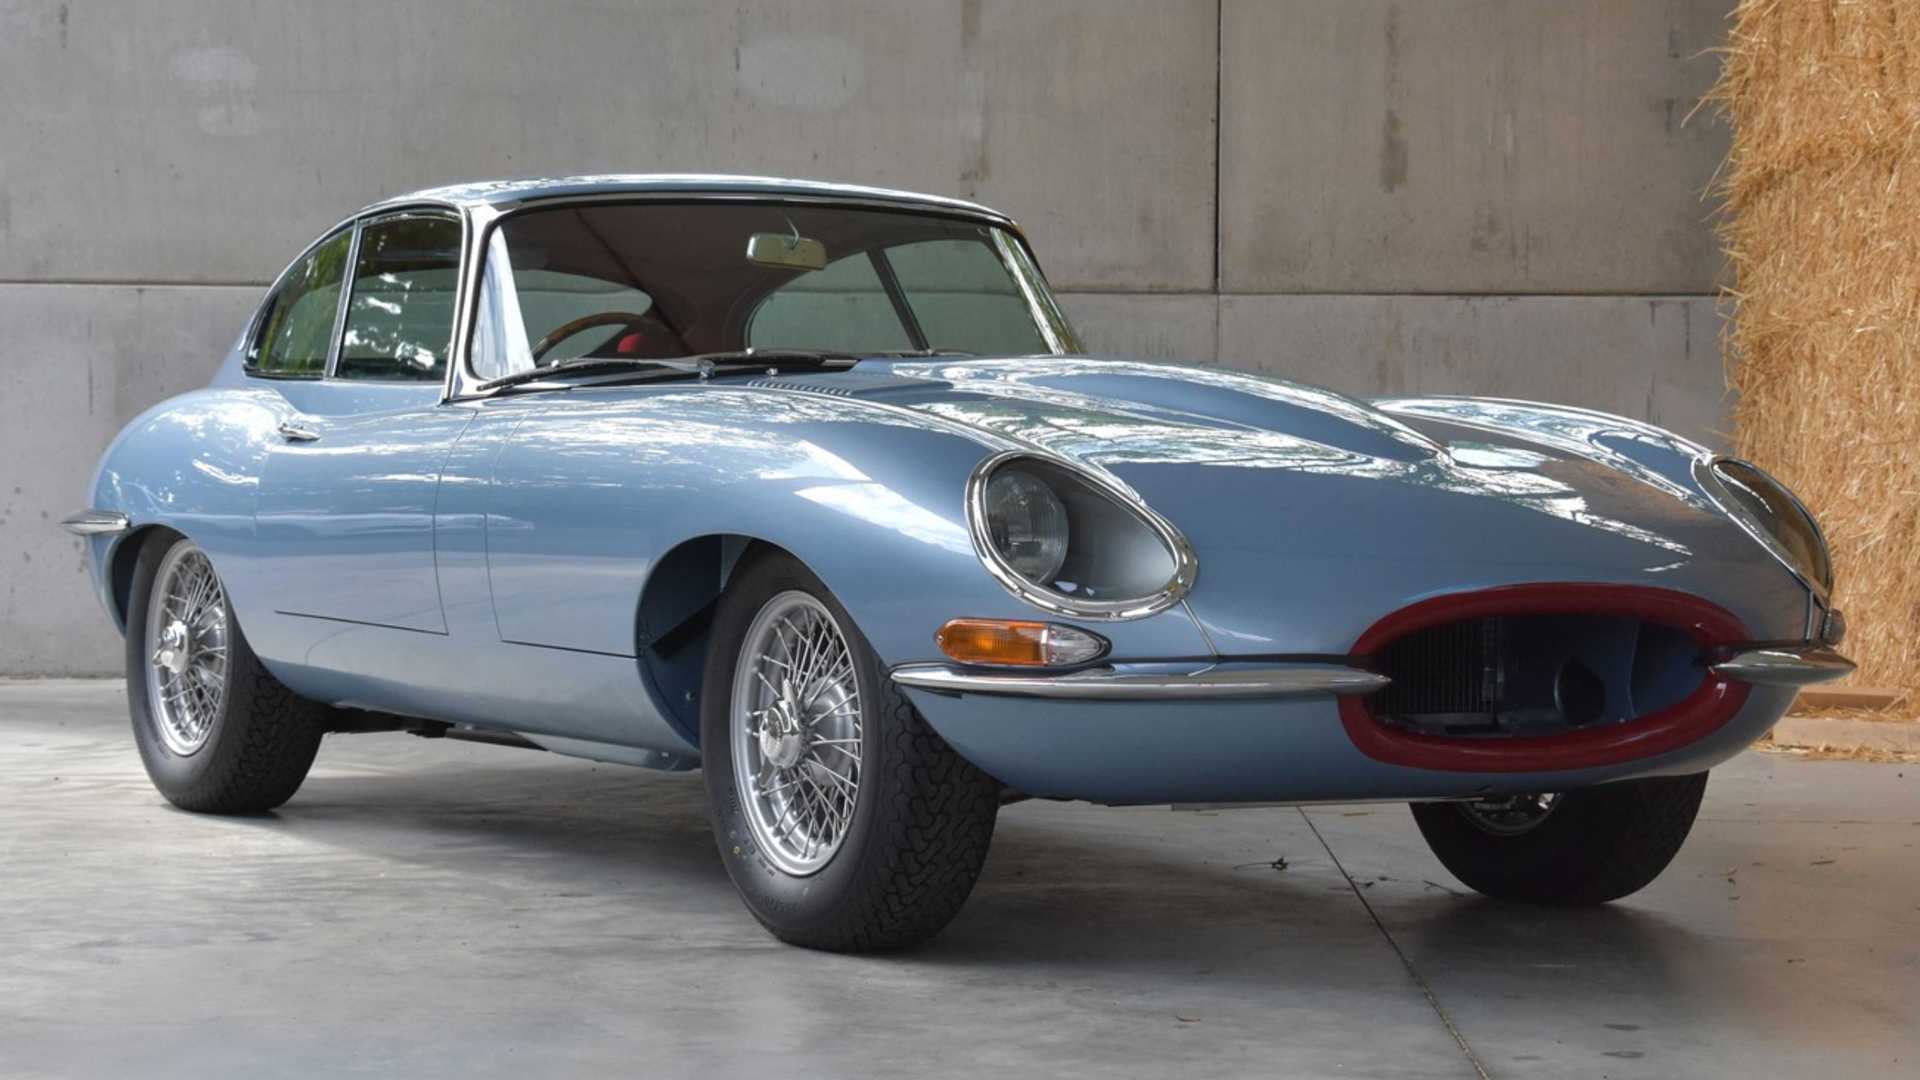 1964 Jaguar Xke Wallpapers